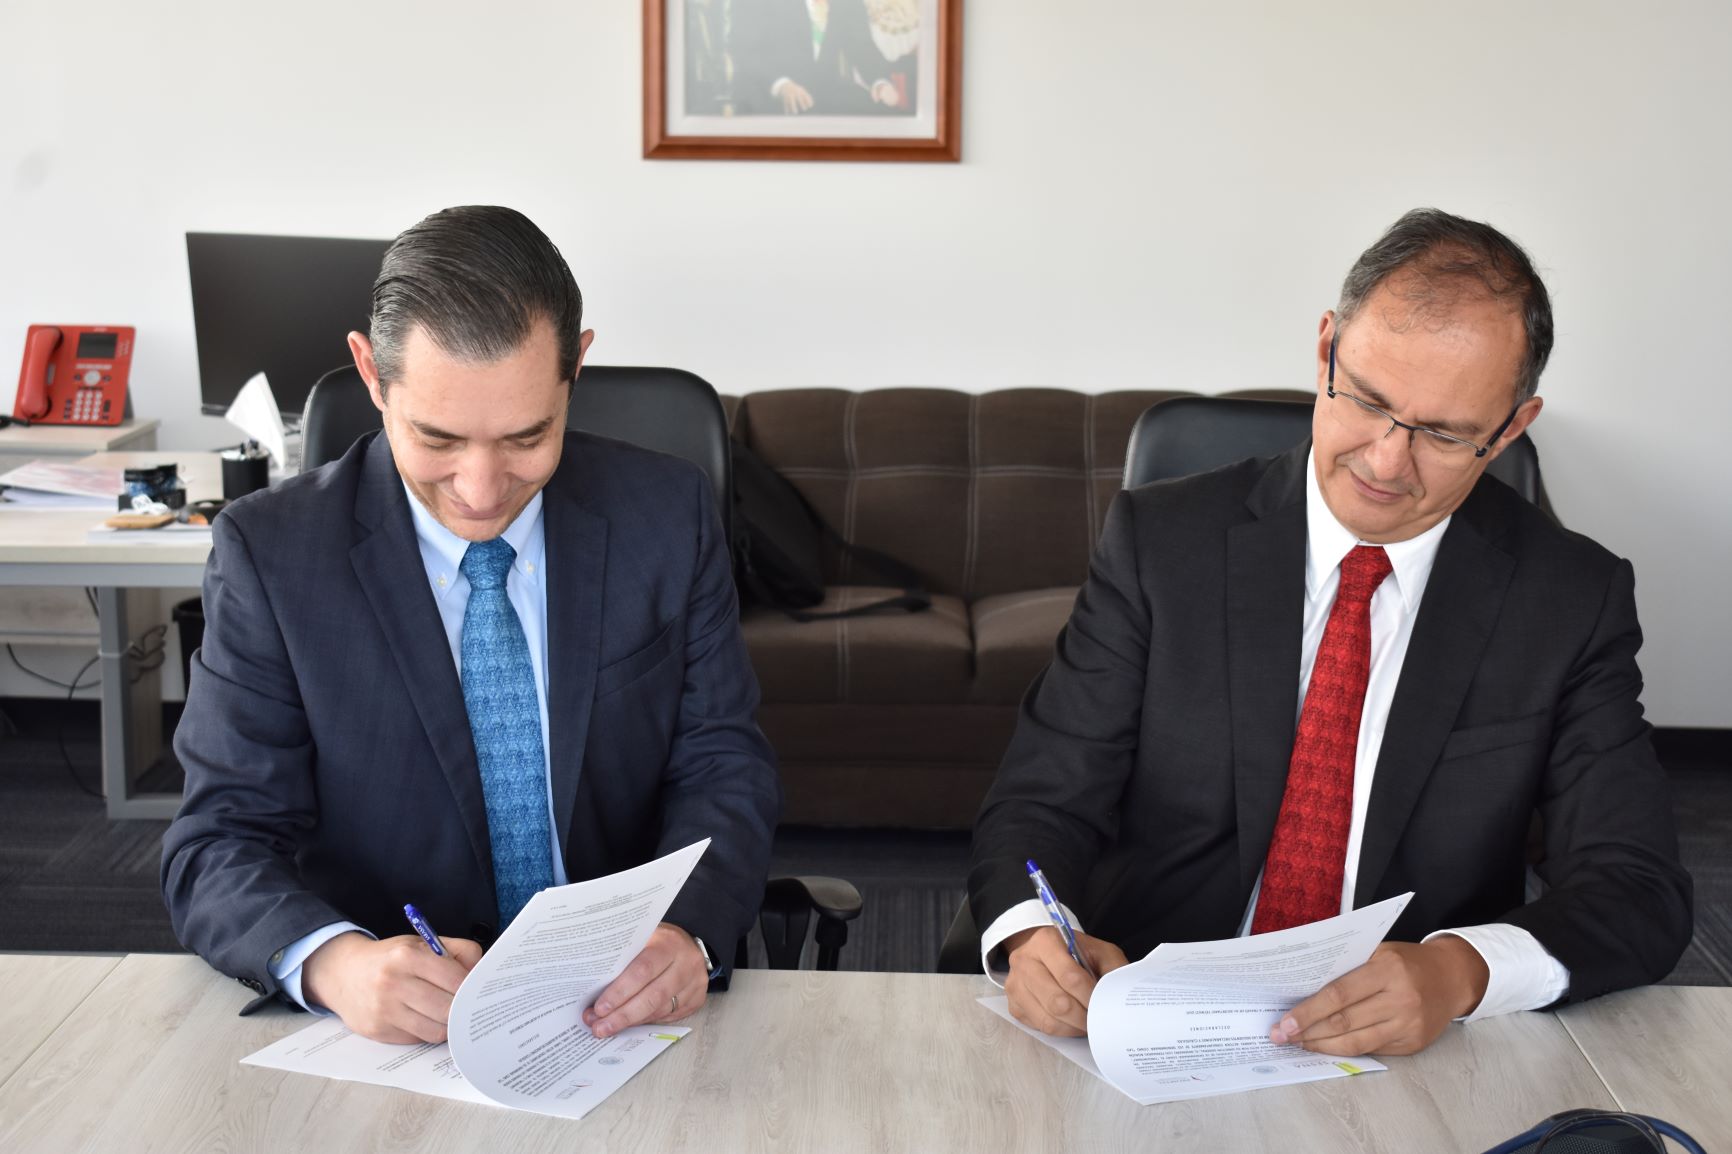 Fotografía del Director General de PROMTEL y el Secretario Ejecutivo de la SESNA firmando un documento